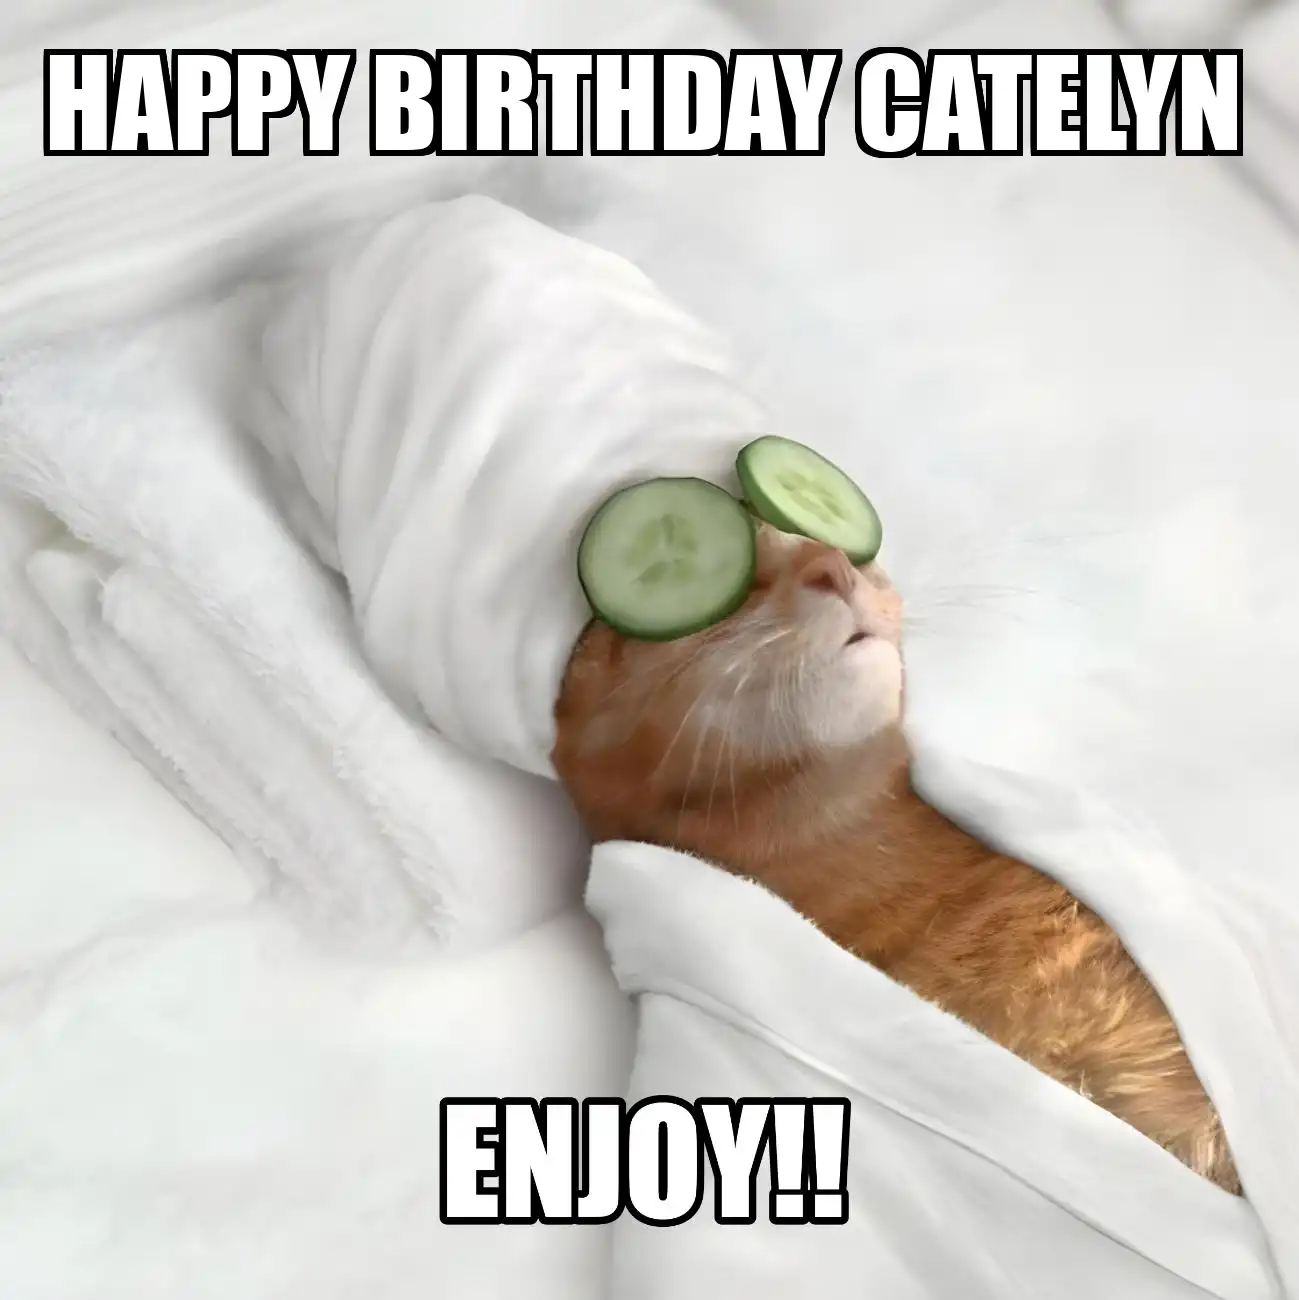 Happy Birthday Catelyn Enjoy Cat Meme